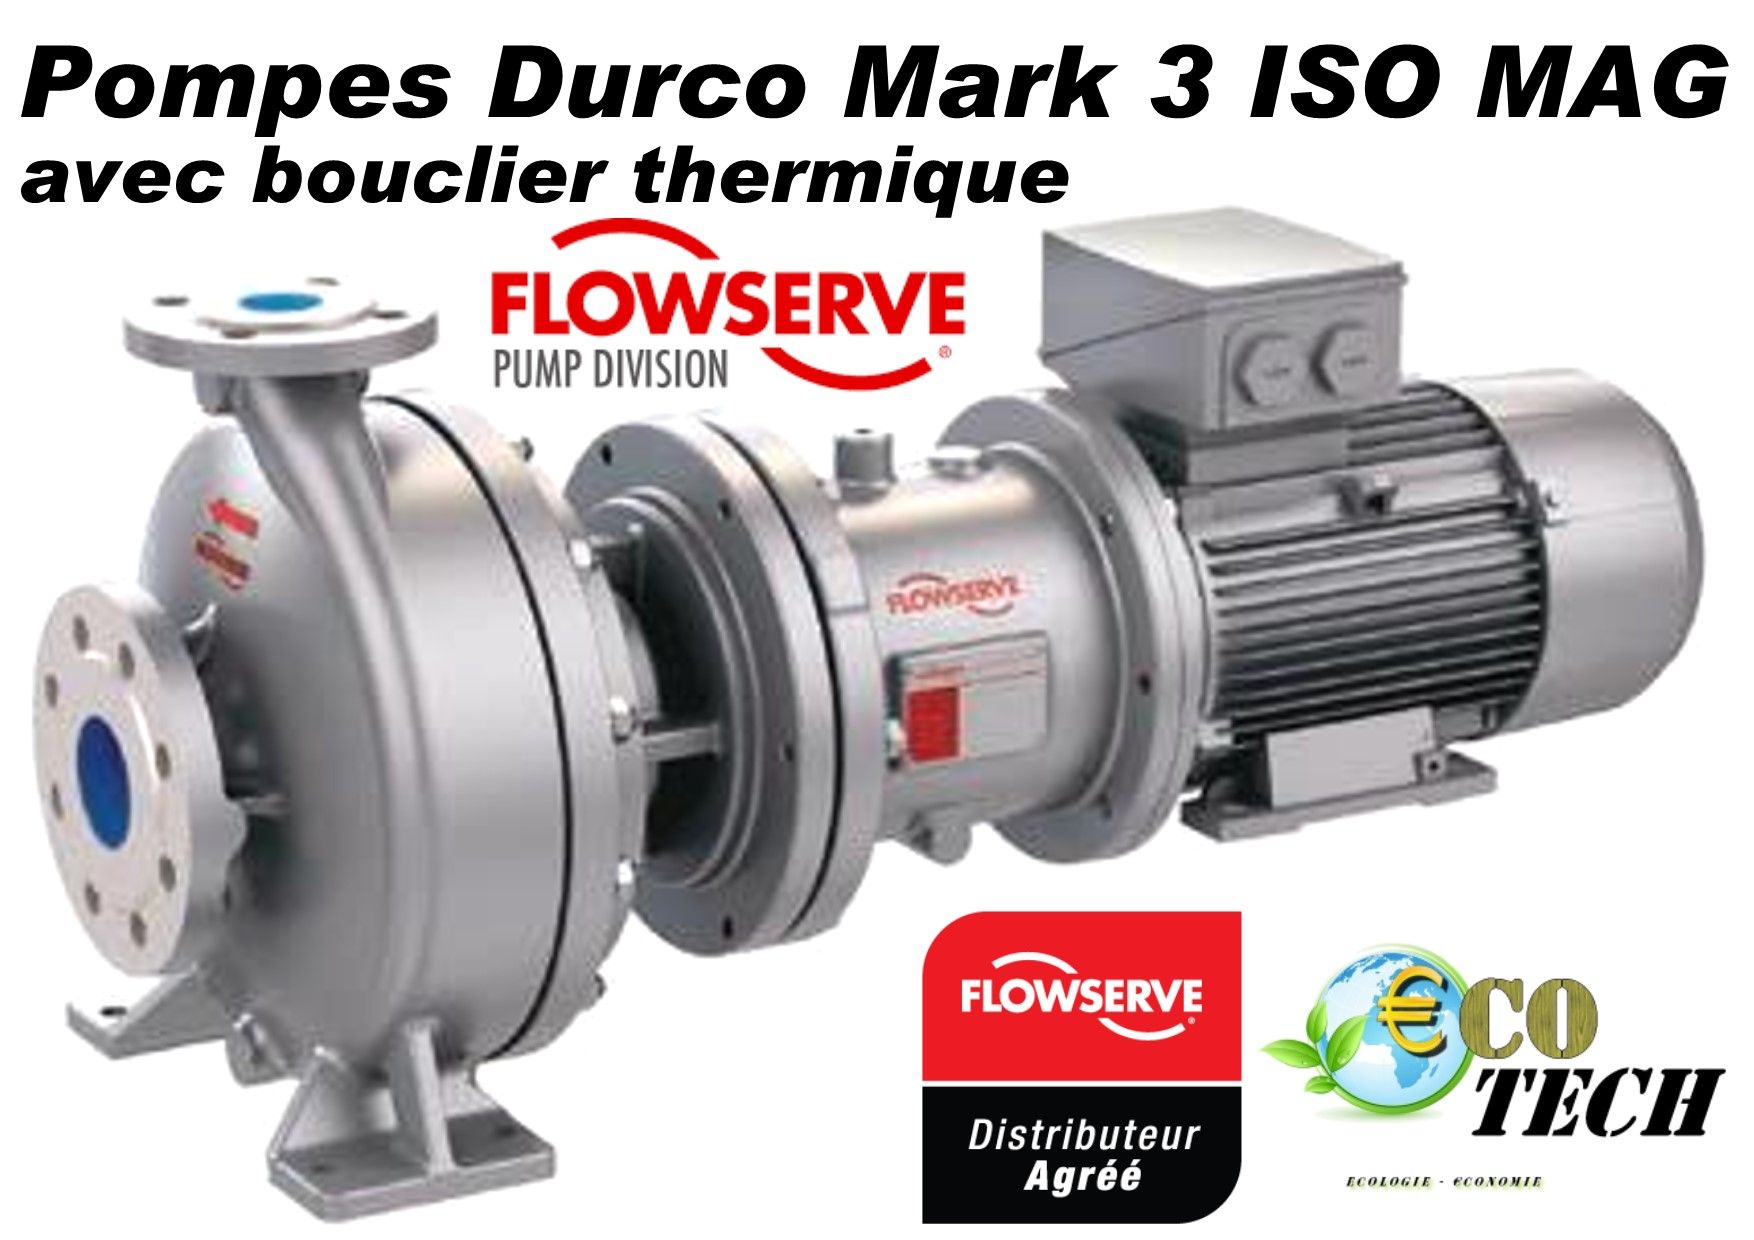 Pompe flowserve durco mark 3 iso mag avec bouclier thermique_0